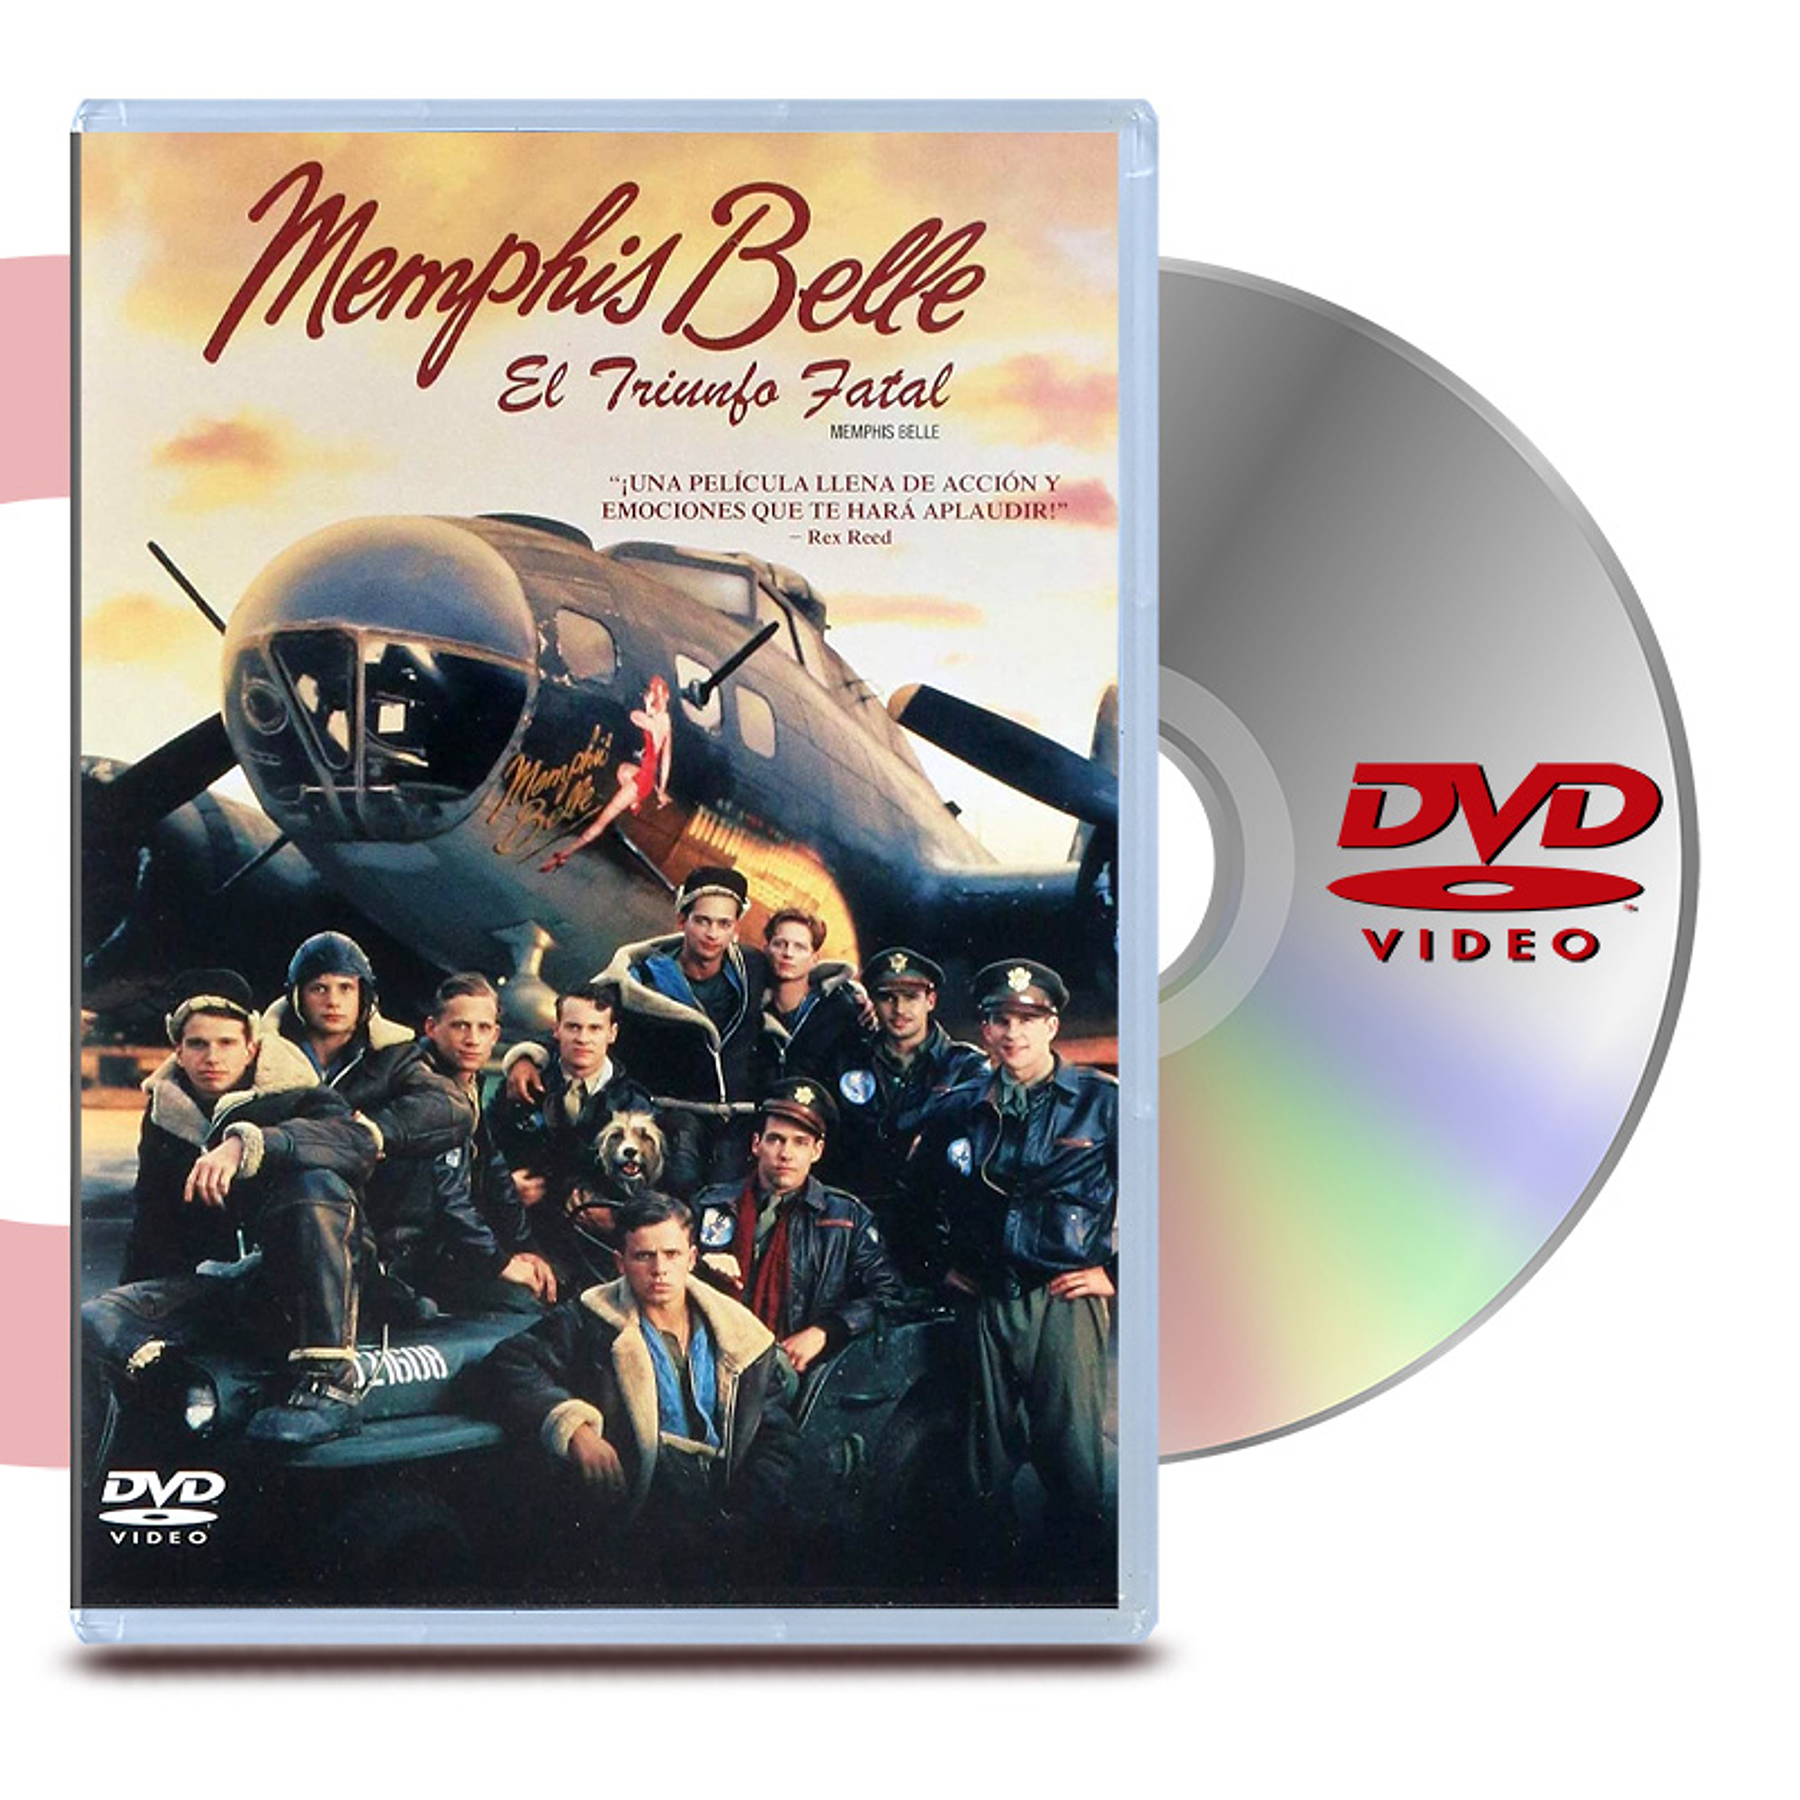 DVD Memphis Belle El Triunfo Final